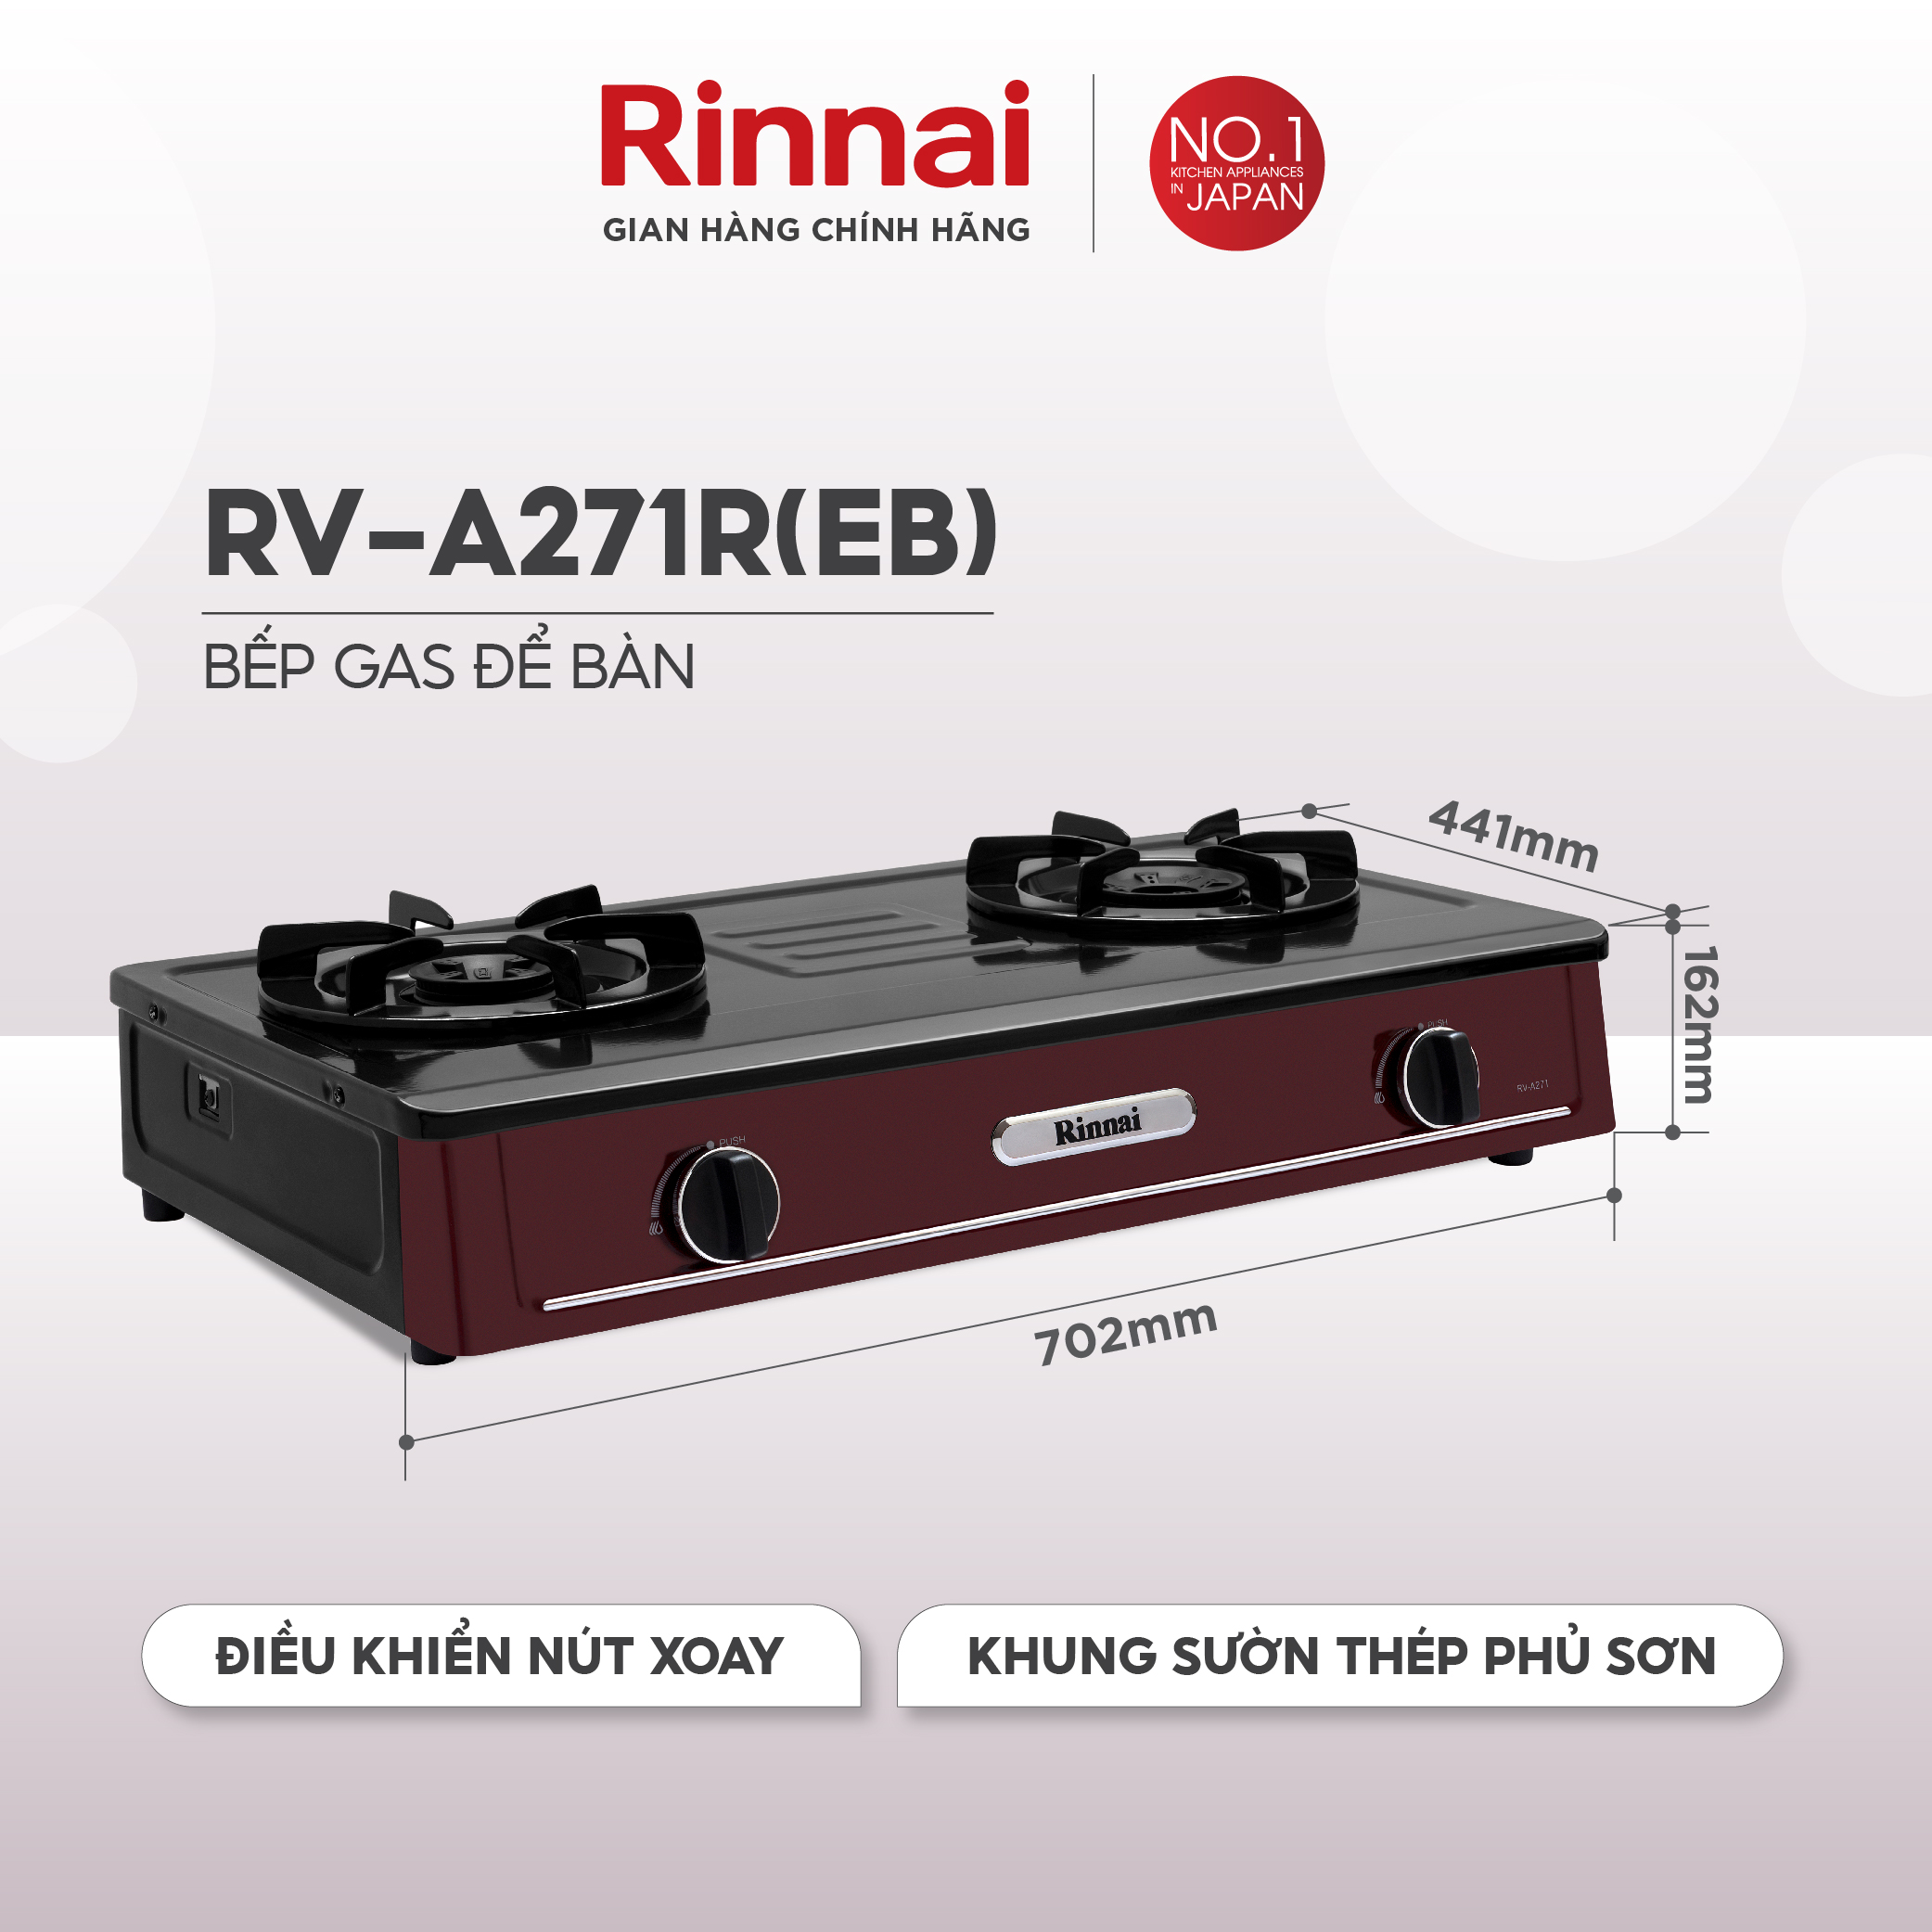 Bếp gas dương Rinnai RV-A271R(EB) mặt bếp men và kiềng bếp men - Hàng chính hãng.